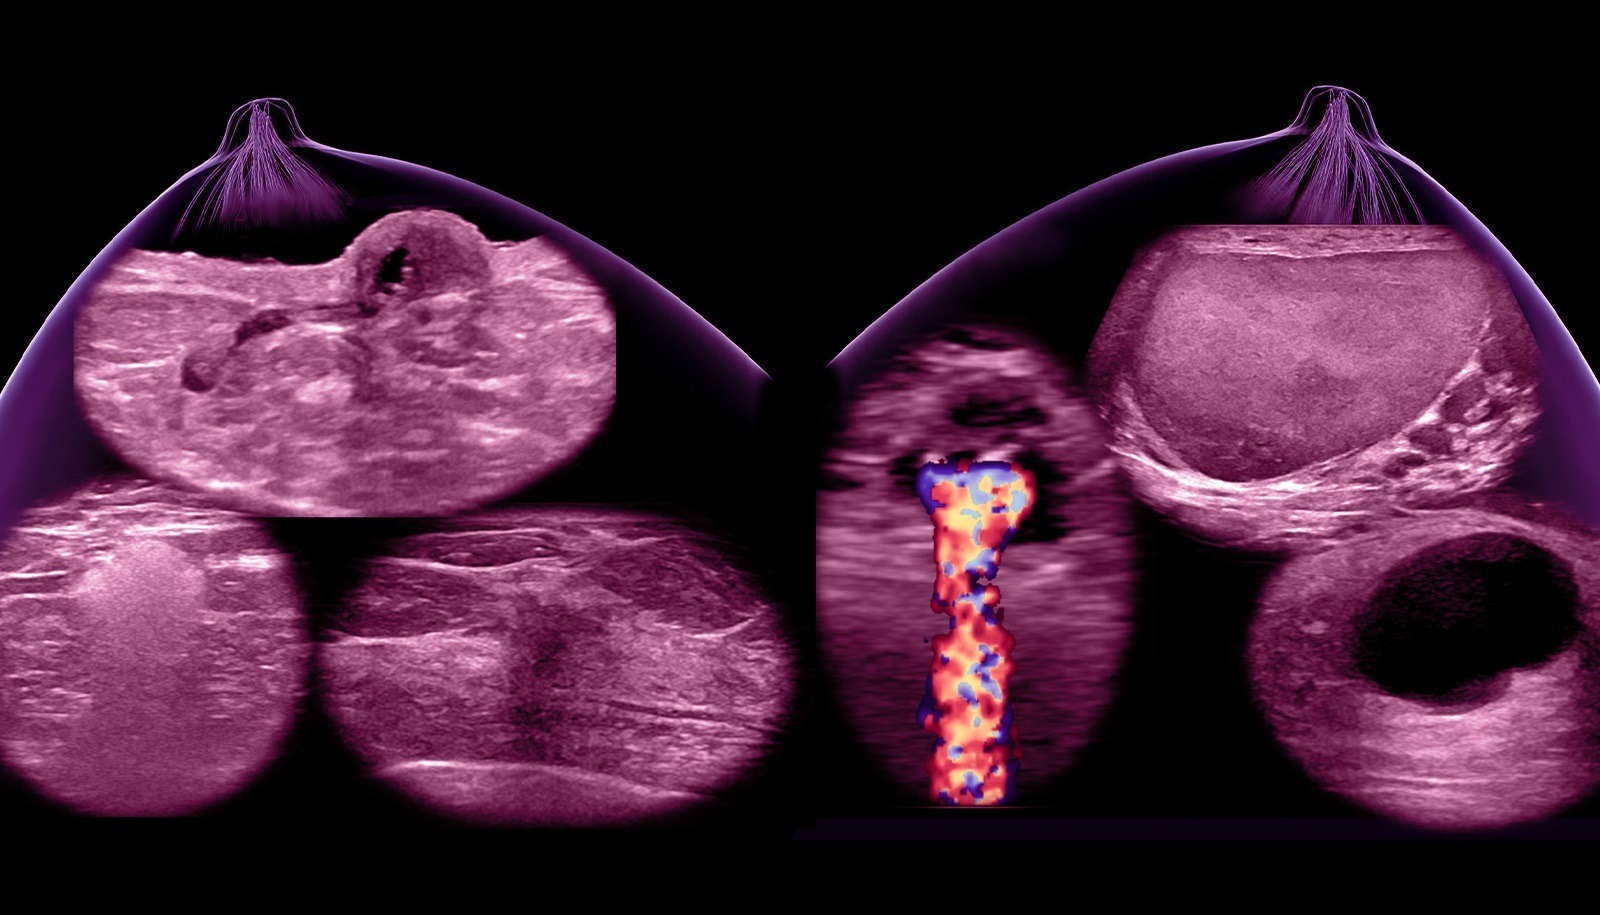 Breast Ultrasound Knobology